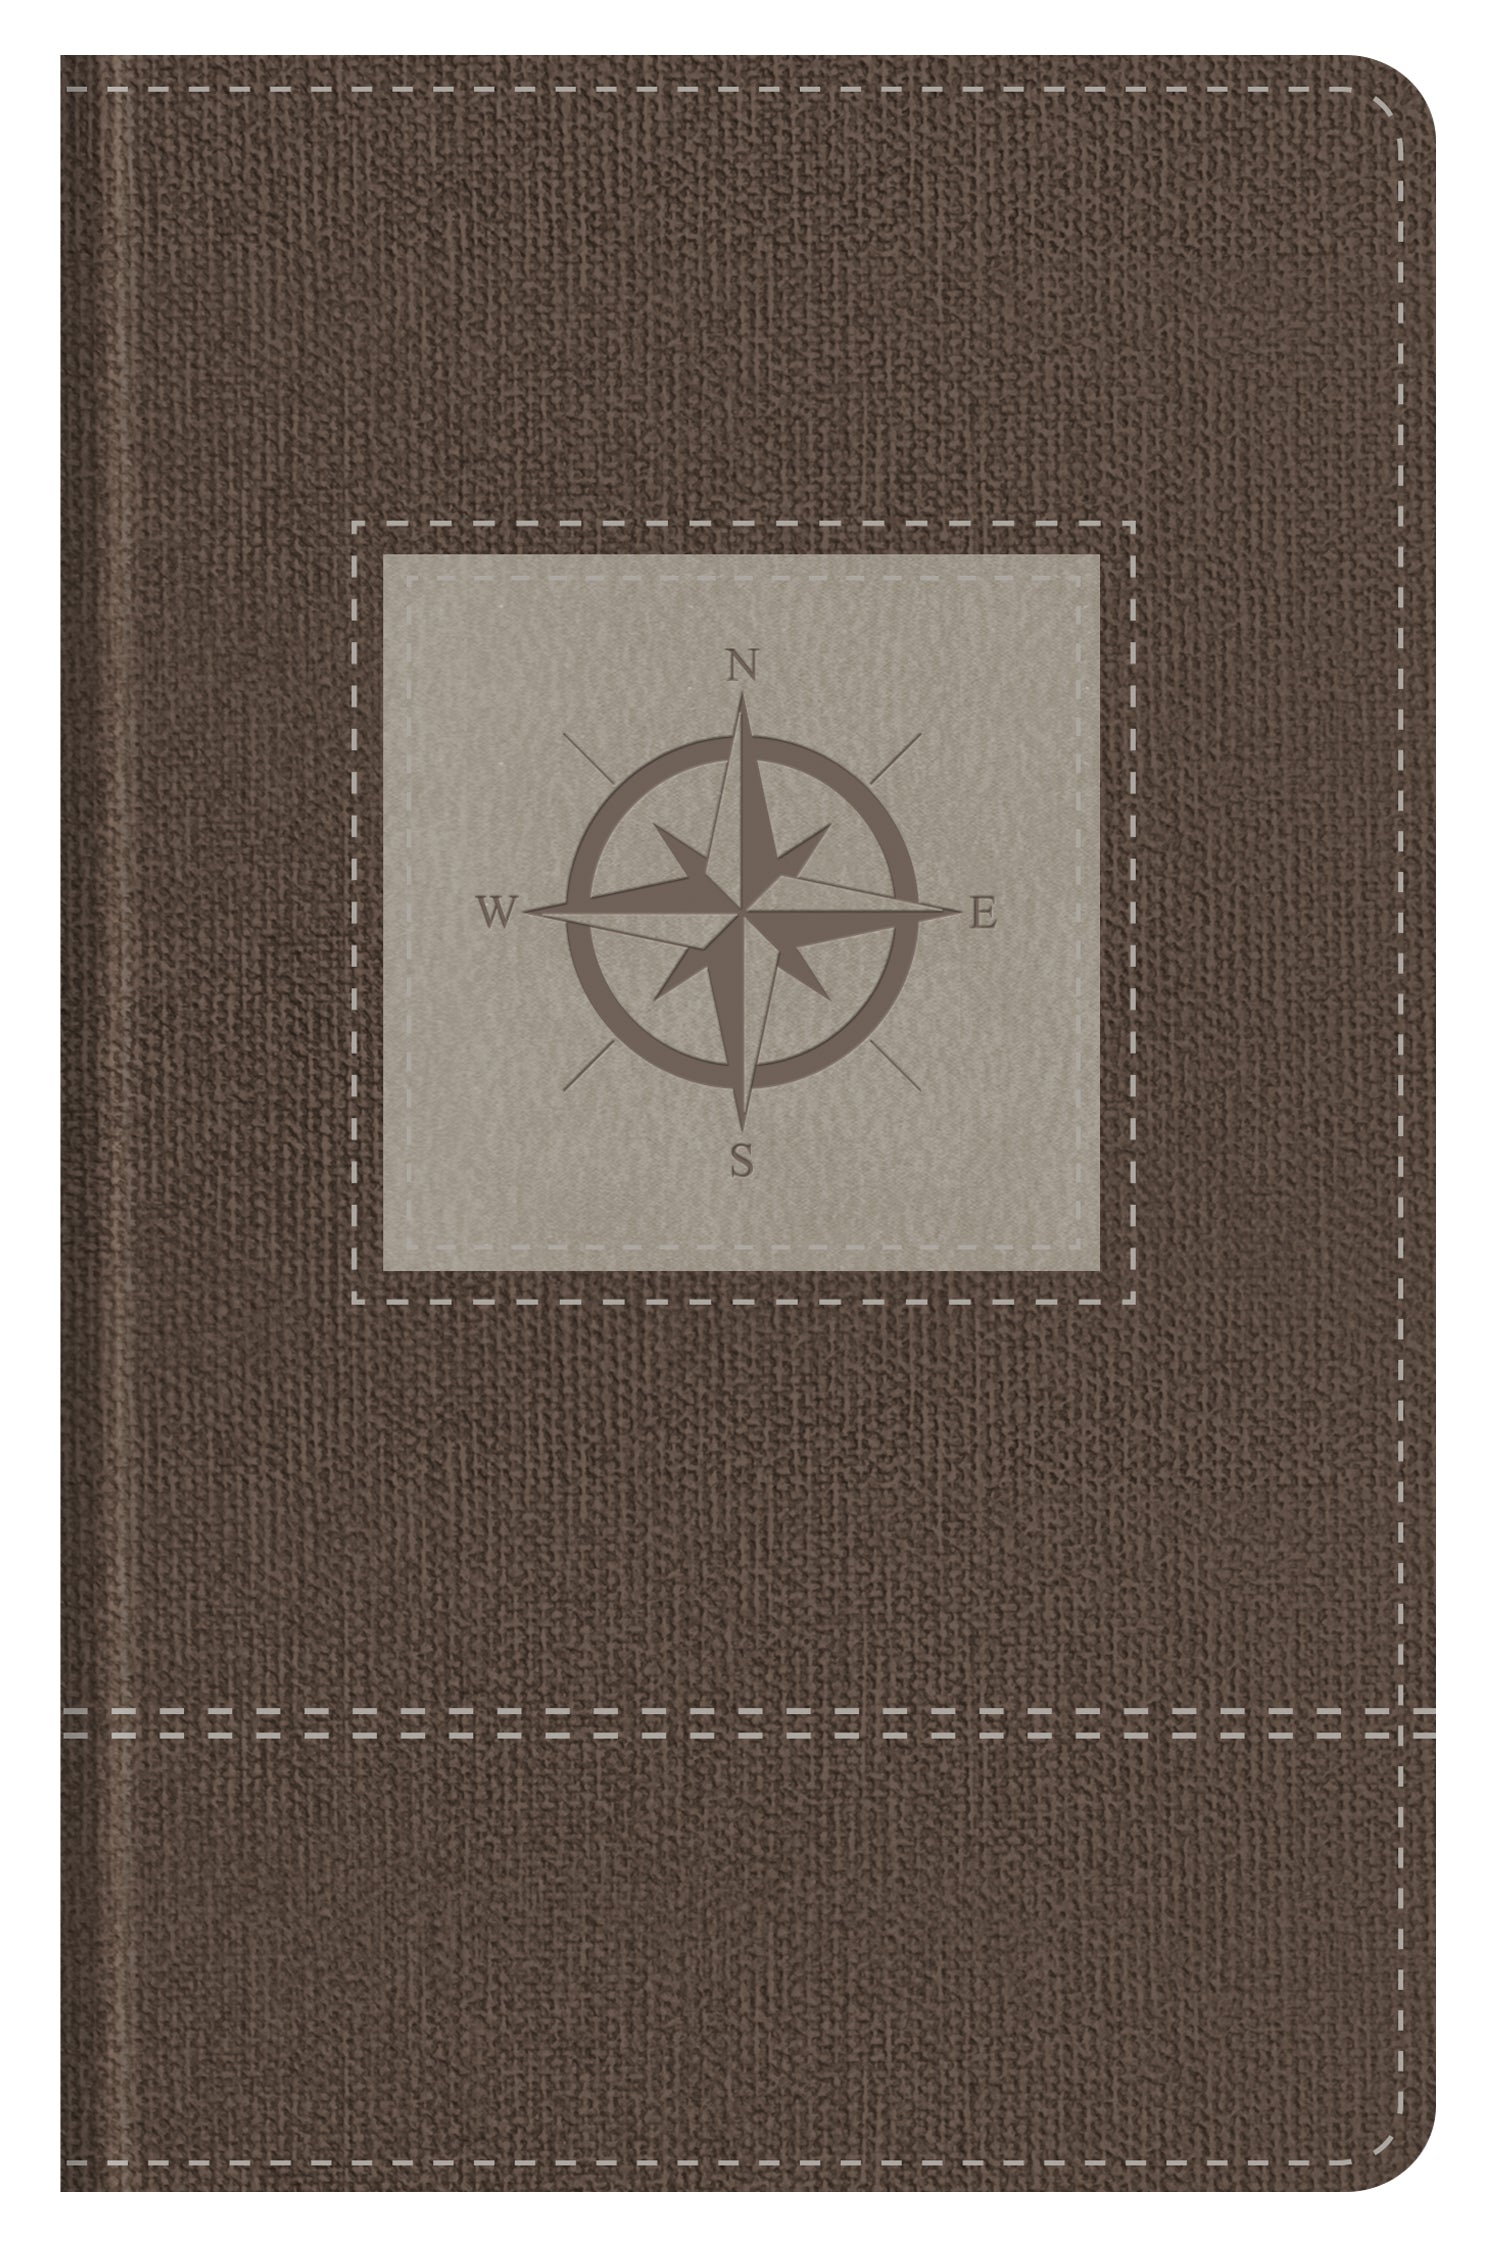 Go-Anywhere KJV Study Bible (Cedar Compass) [Thumb-Indexed] - The Christian Gift Company